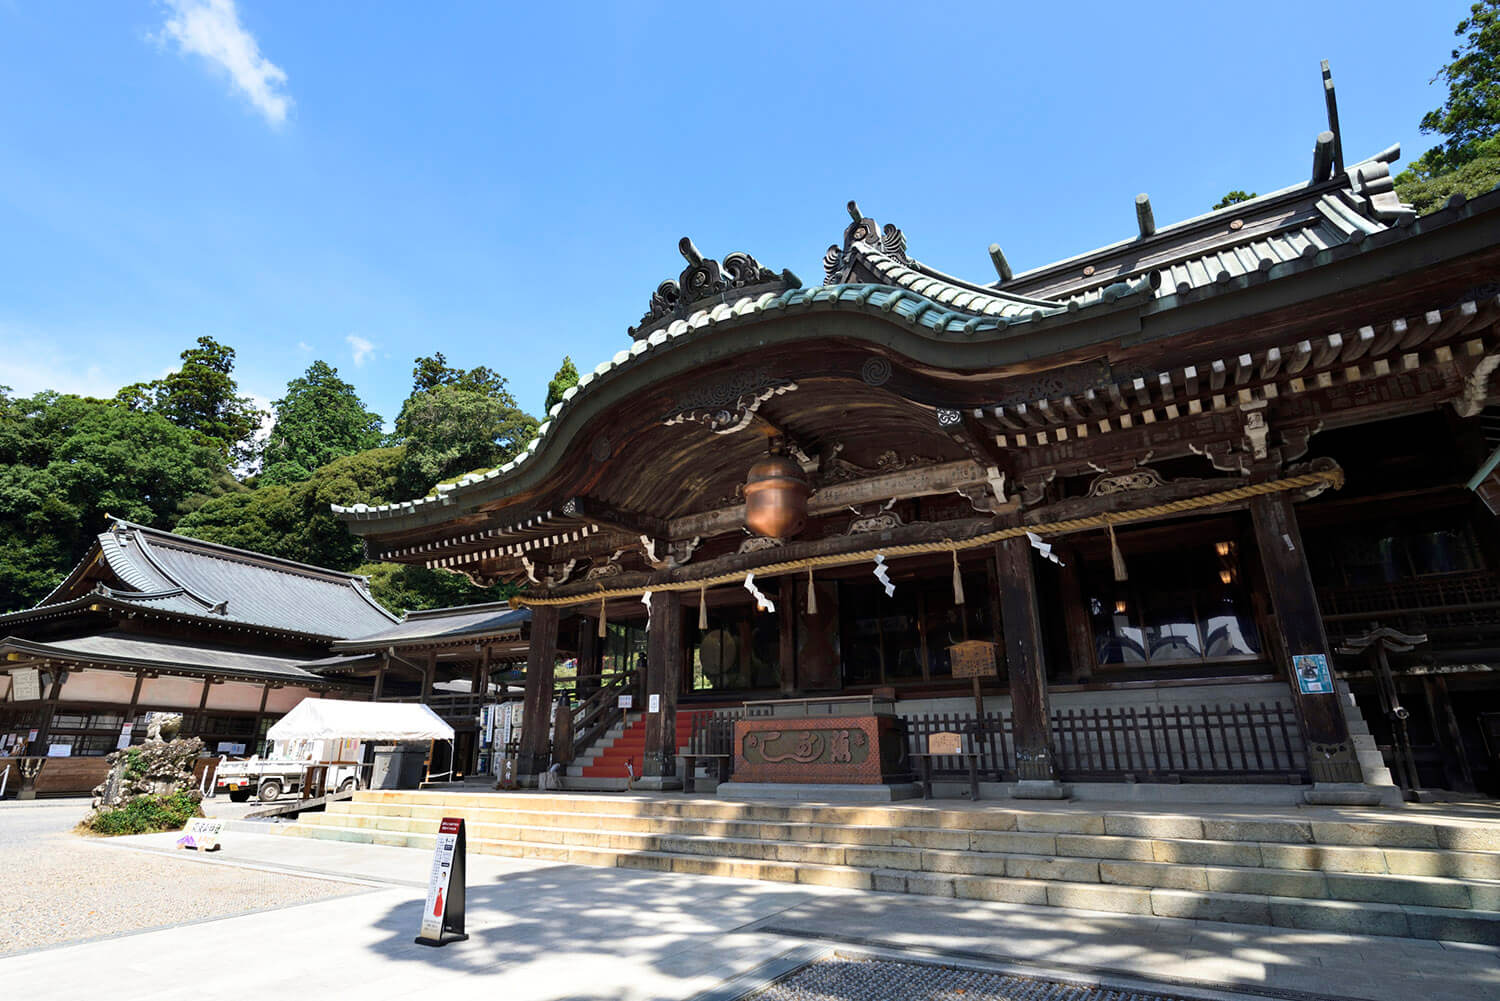 筑波山神社拝殿の大きな鈴は長径108cm重量138kg